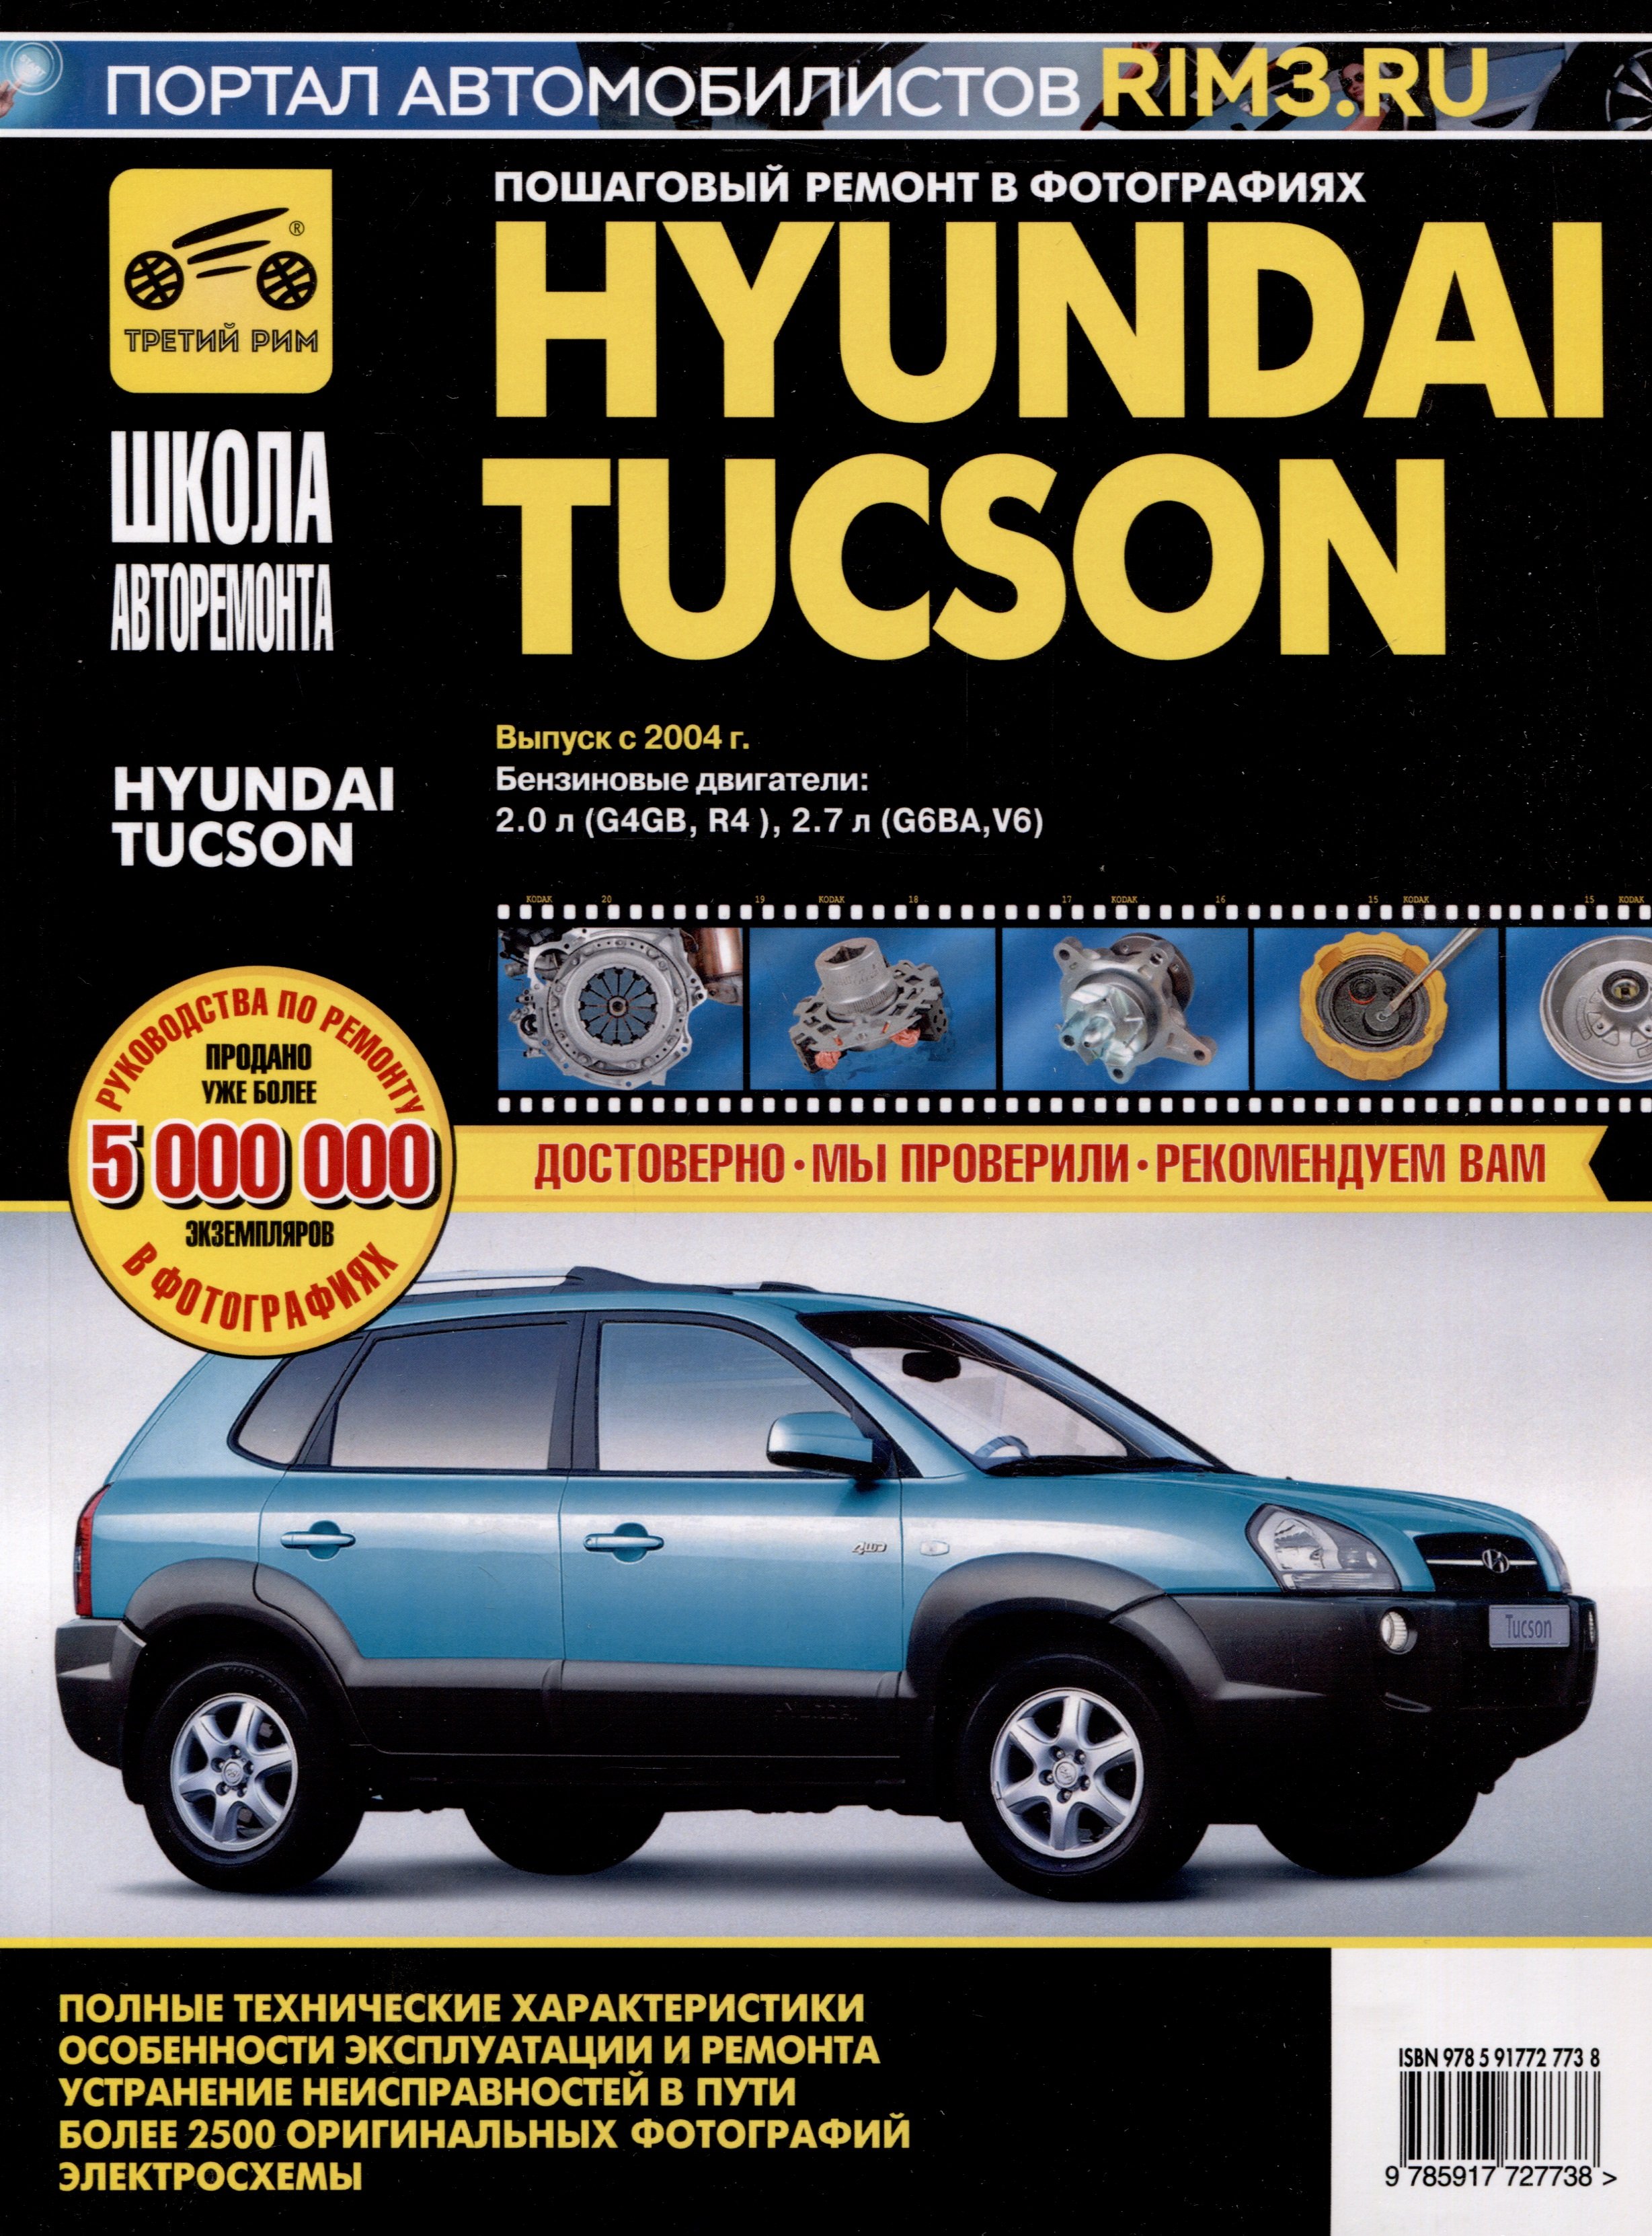 Hyundai Tucson  2004 .   2.0, 2.7, / .   .  